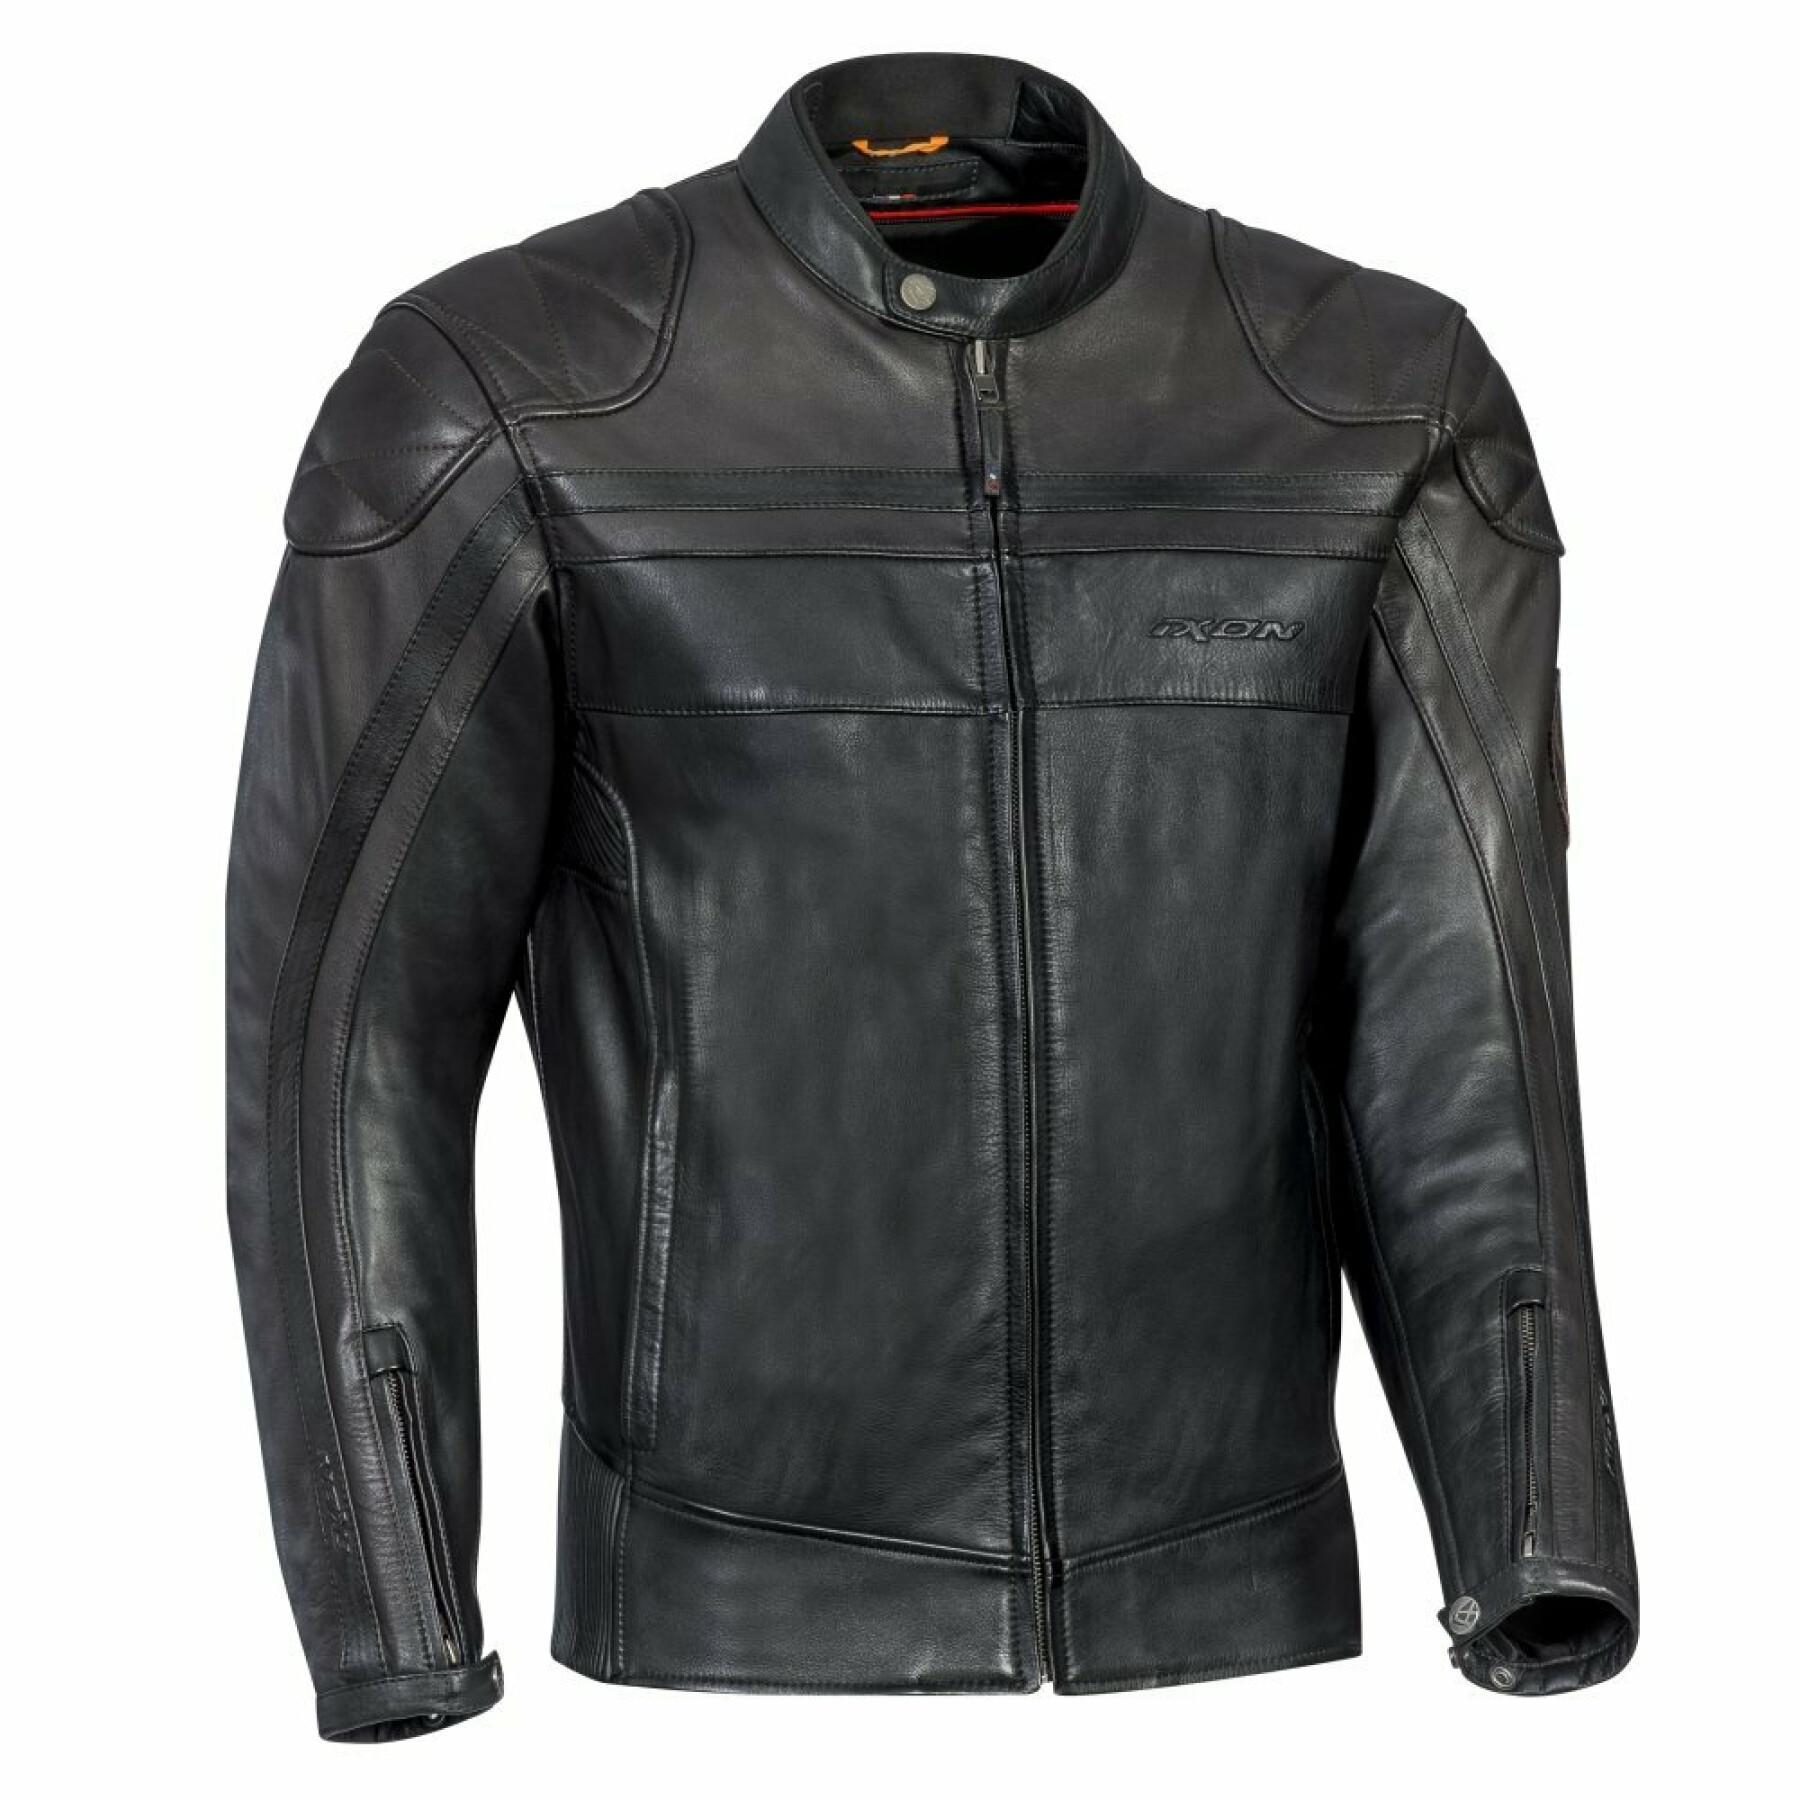 Leather motorcycle jacket Ixon pioneer